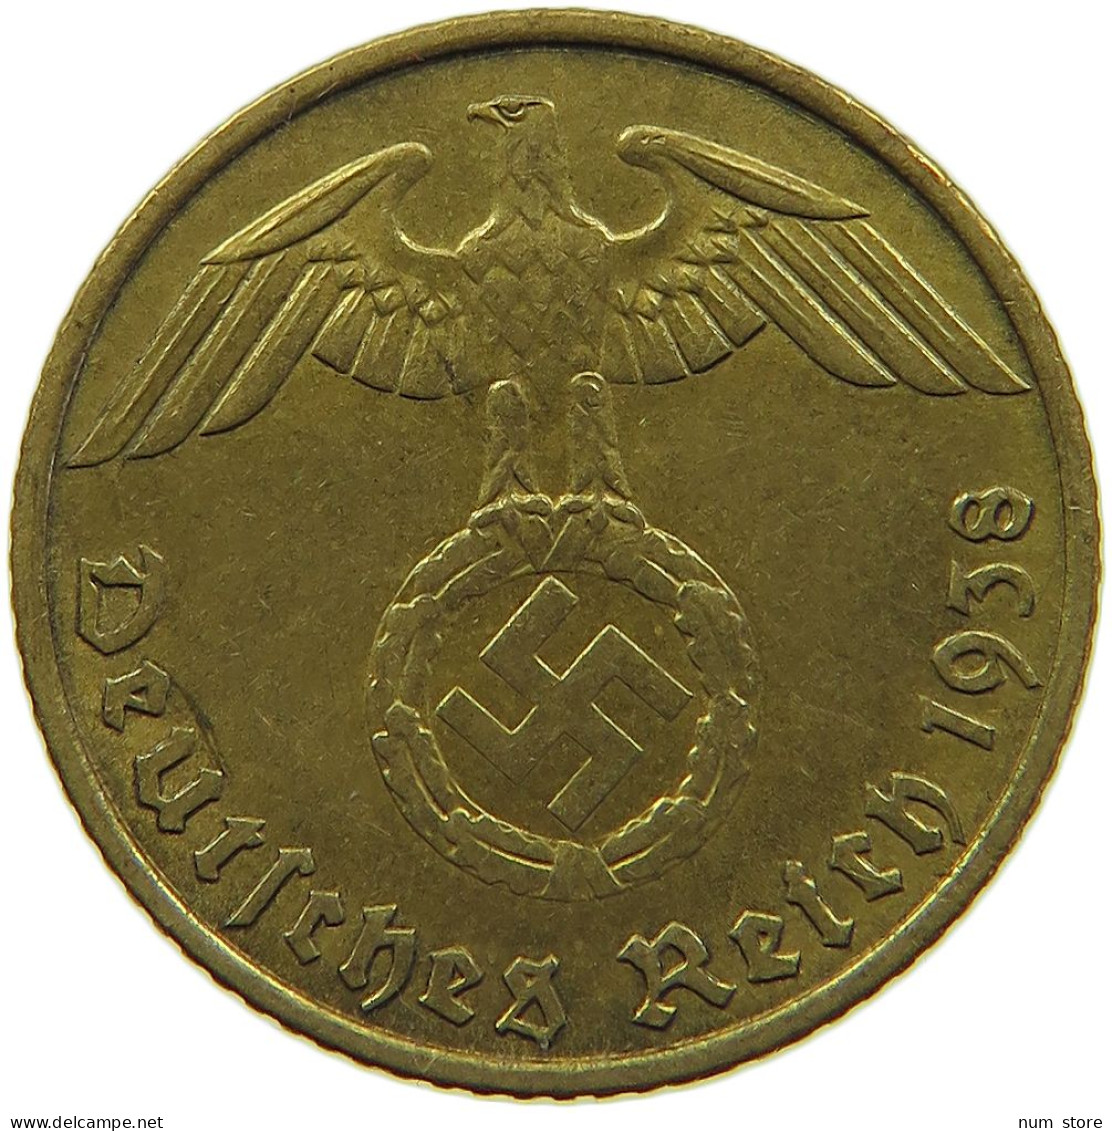 GERMANY 5 REICHSPFENNIG 1938 A #s091 0707 - 5 Reichspfennig